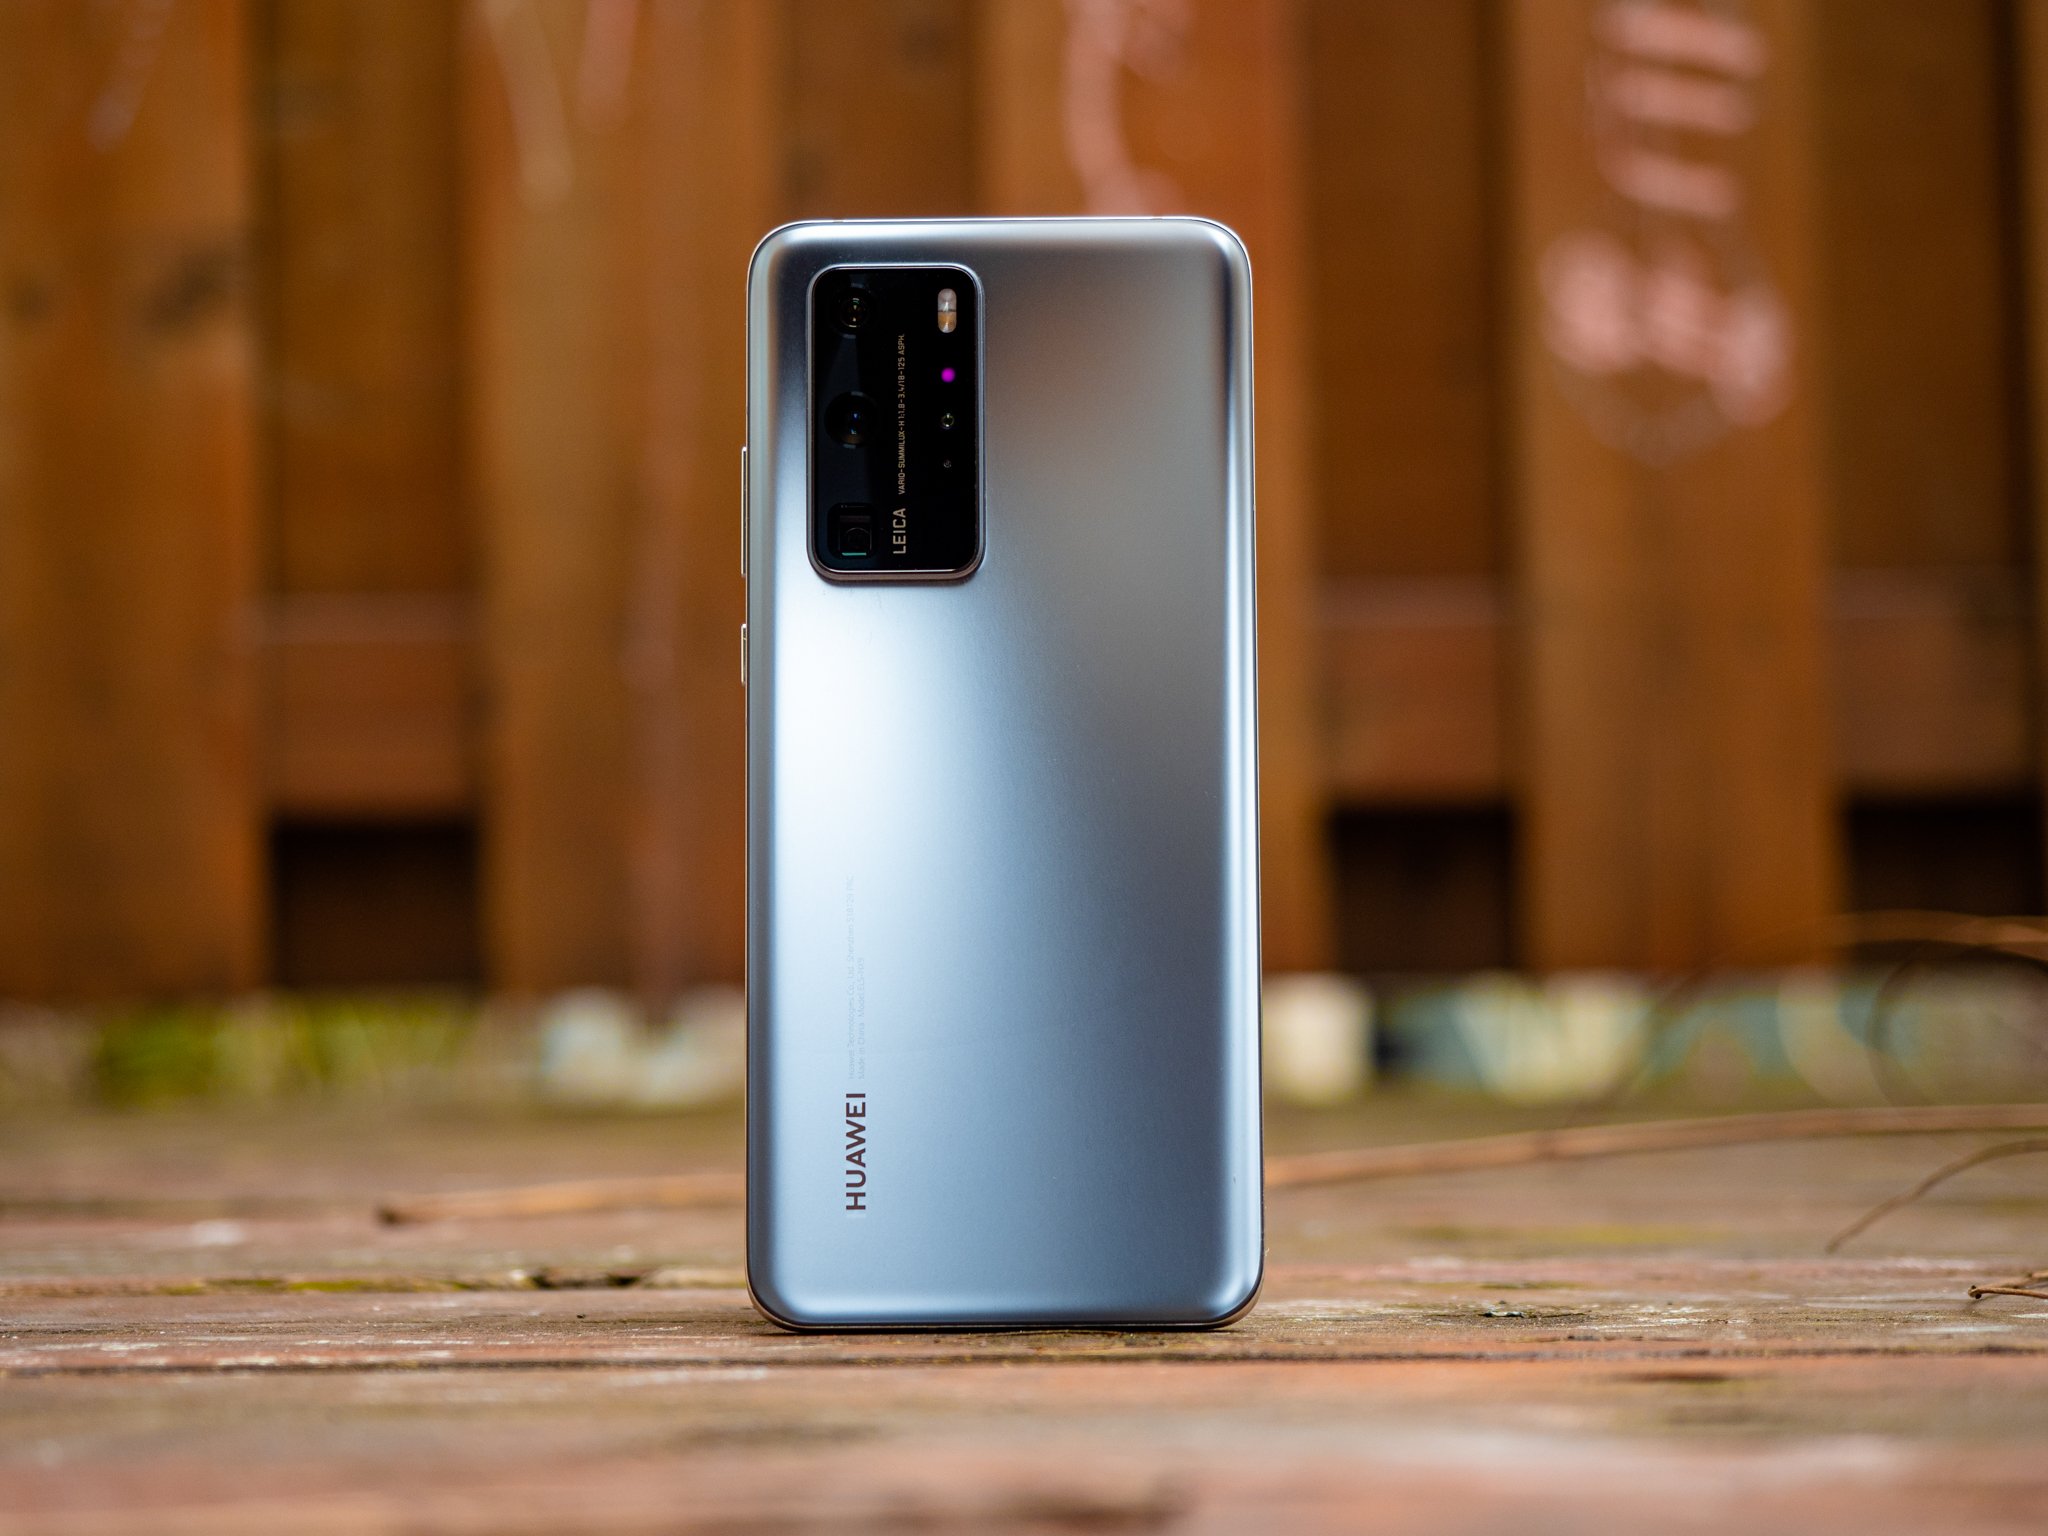 Best Huawei phones 2022